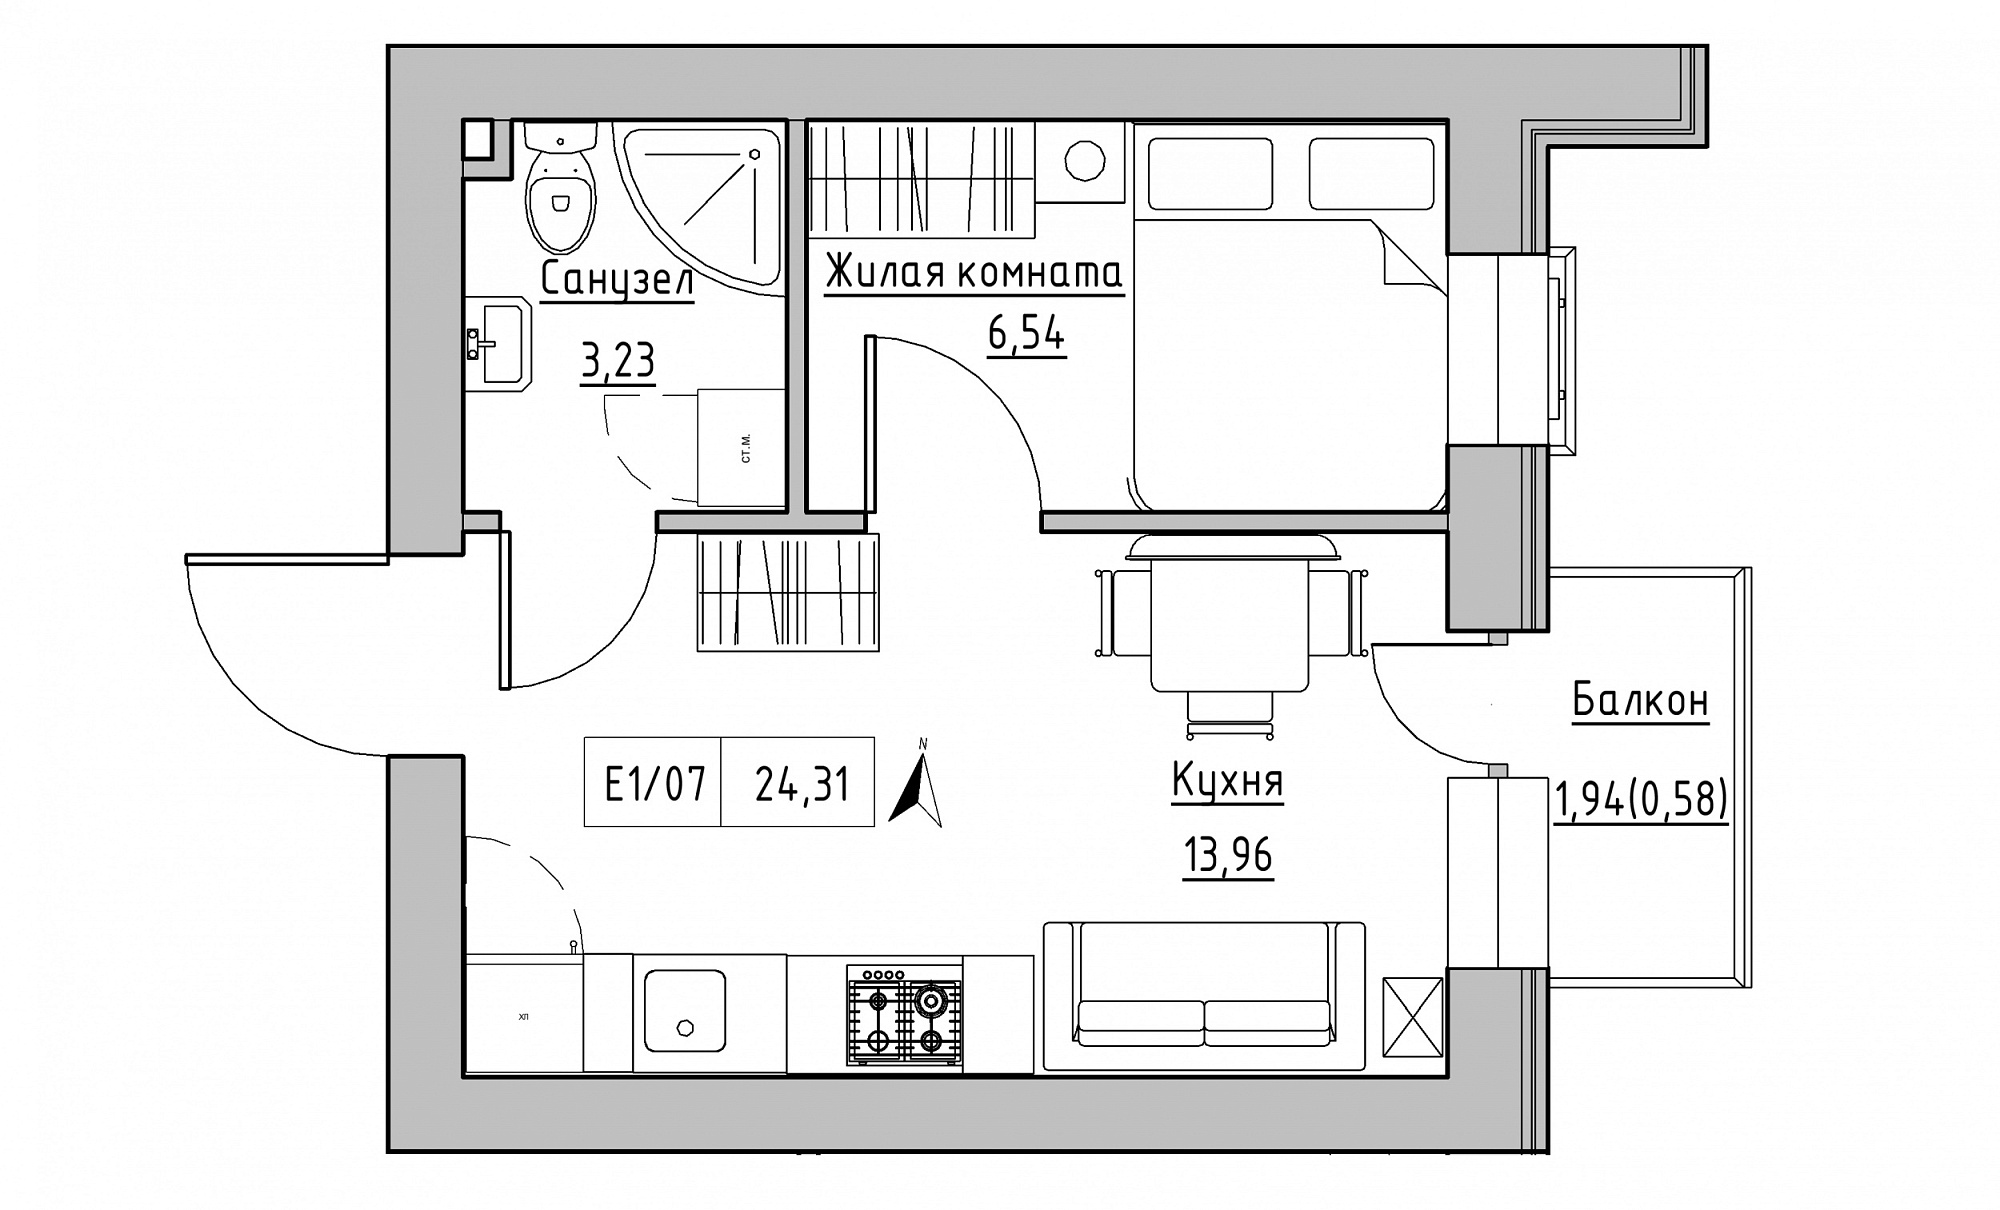 Планування 1-к квартира площею 24.31м2, KS-015-03/0007.